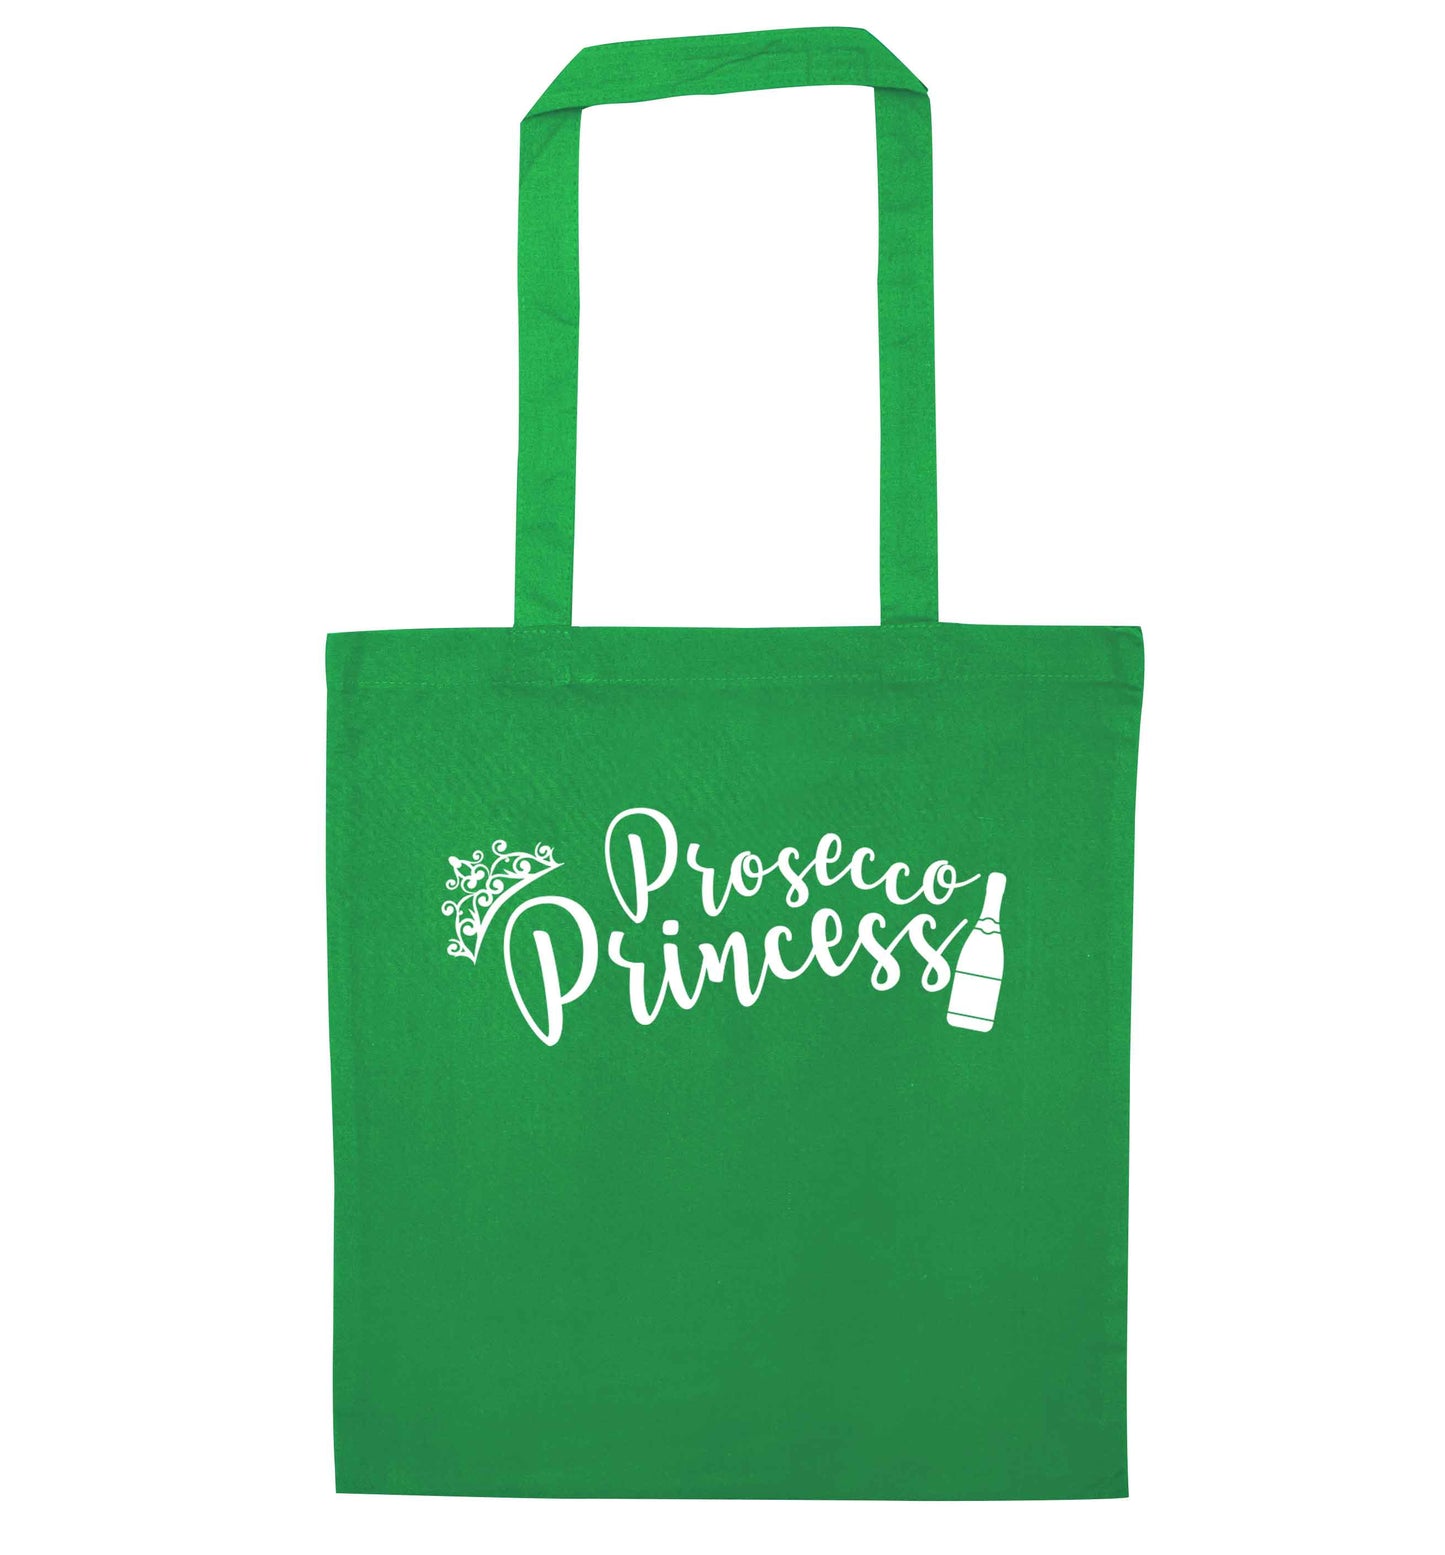 Prosecco princess green tote bag